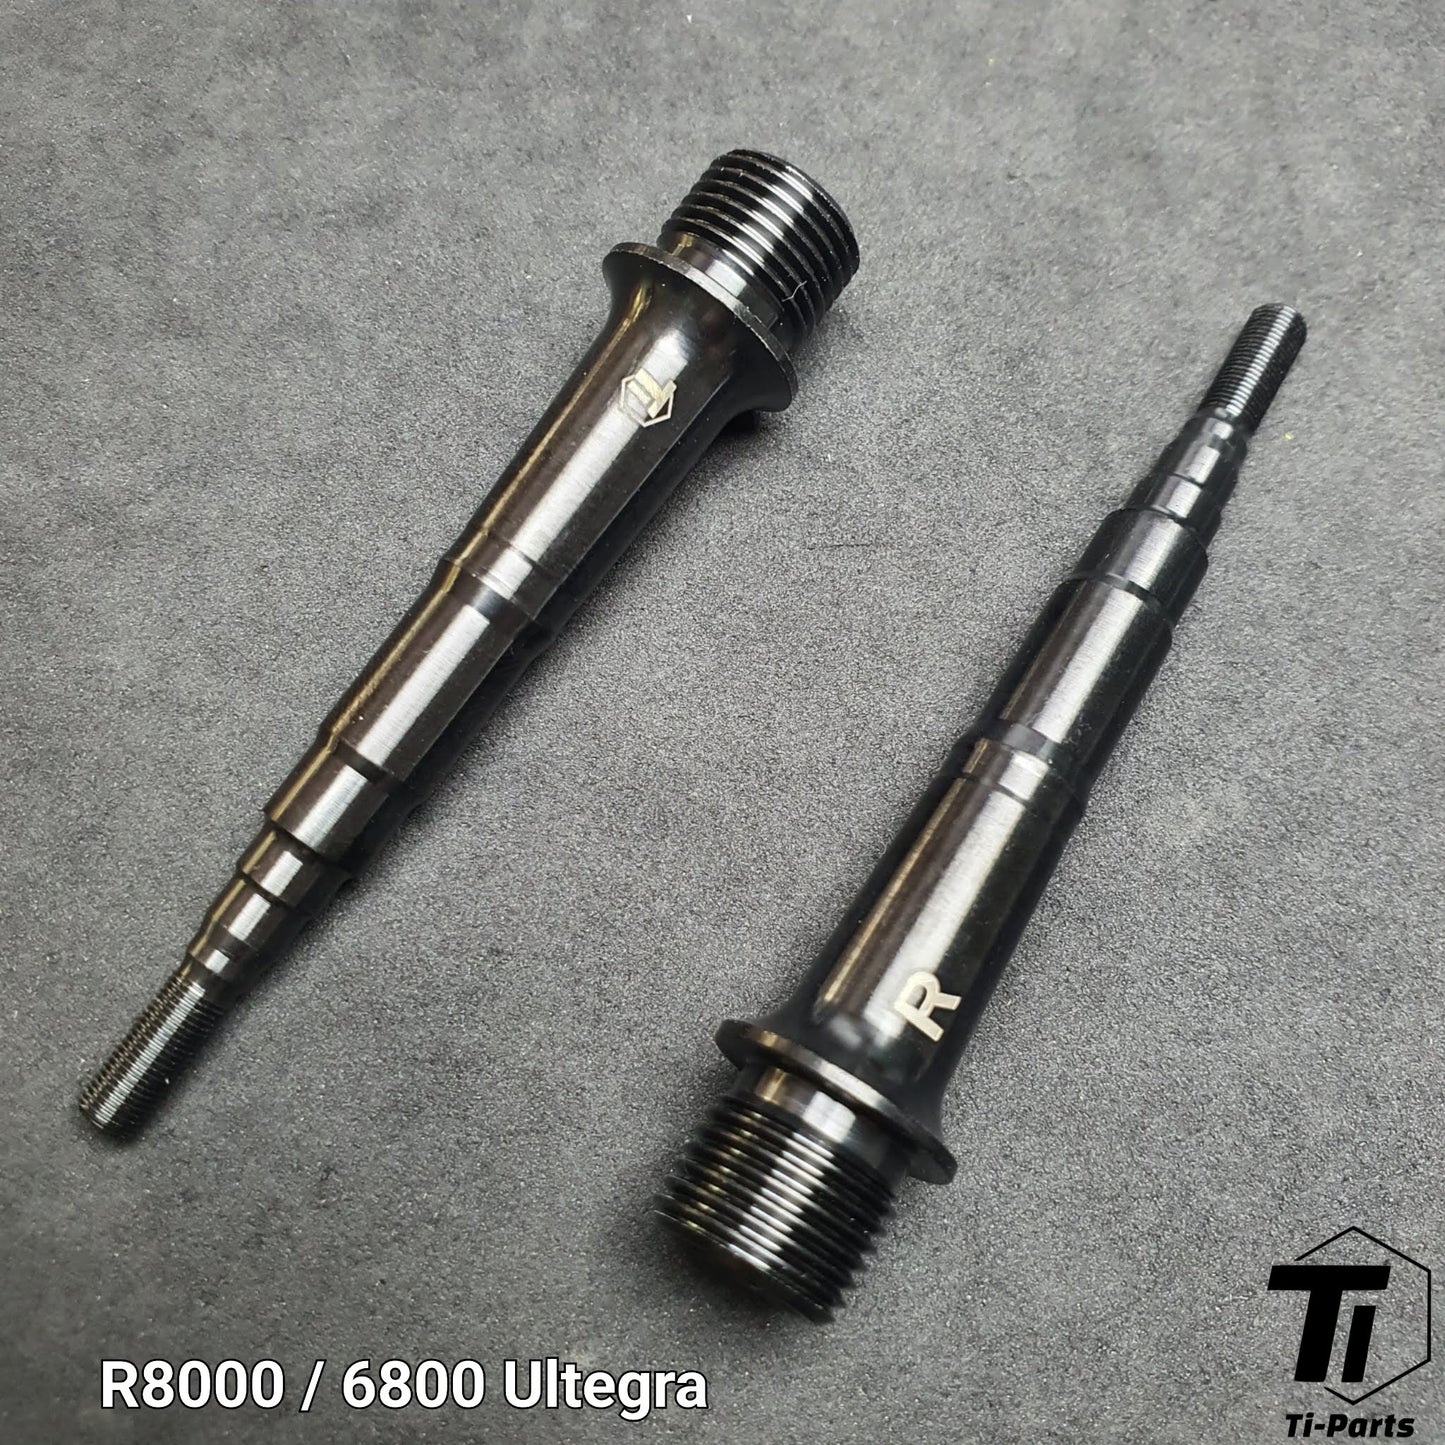 Eje de pedal de titanio para Shimano | +4mm M9120 M9020 M9000 M8000 XT XTR Ultegra Dura Ace 9000 6800 R8000 R9100 M975 M980 M990